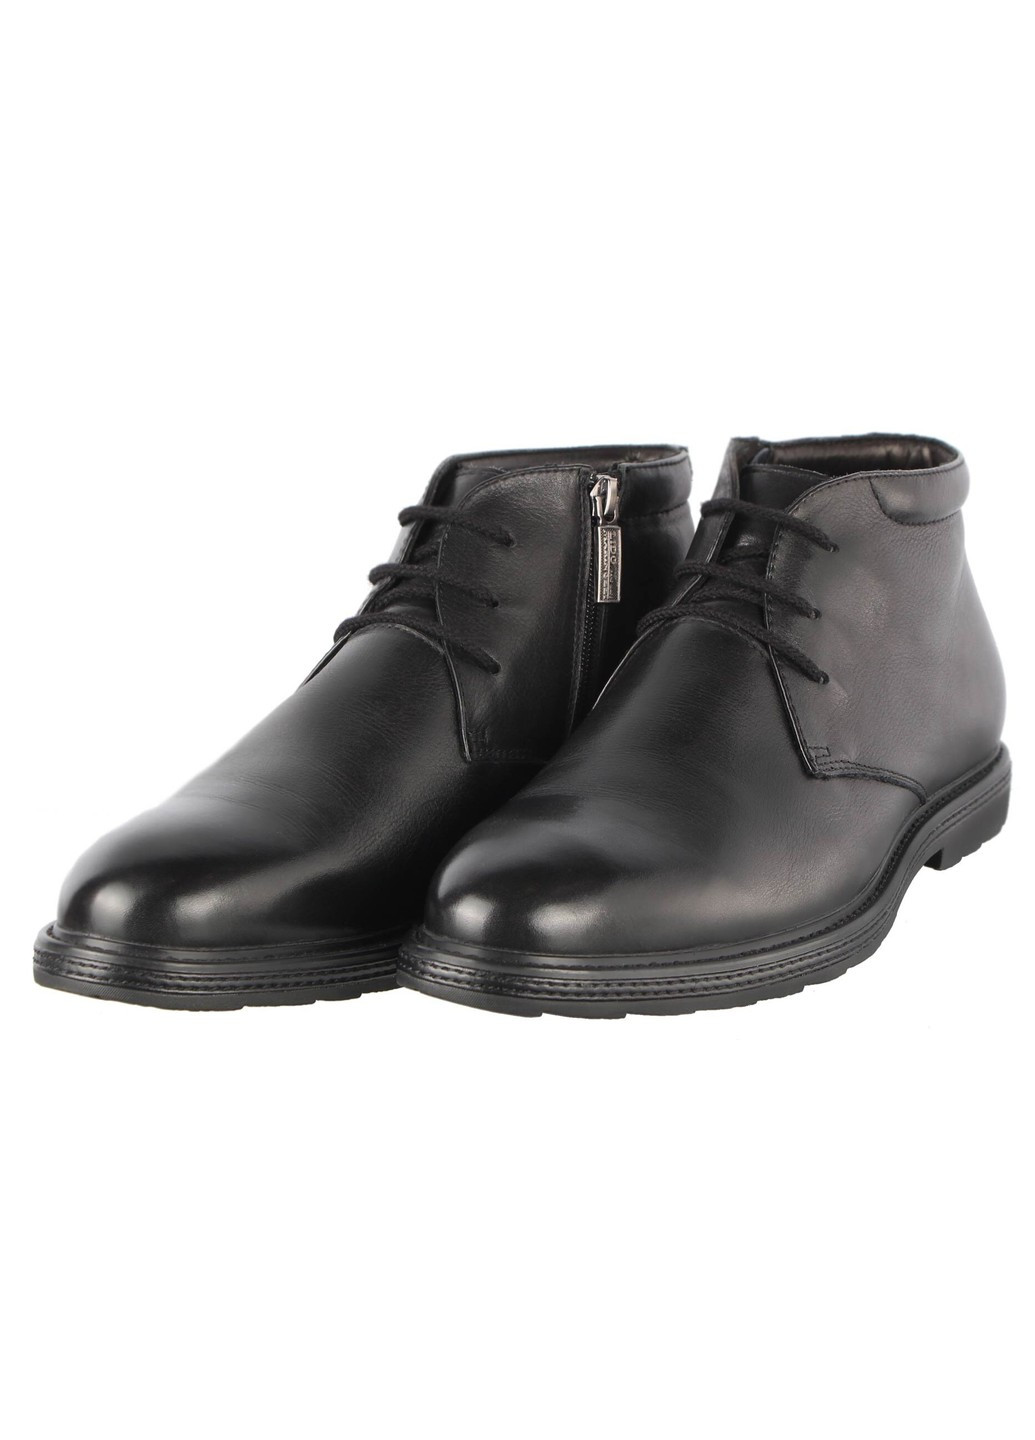 Черные зимние мужские зимние классические ботинки 207401 Lido Marinozzi